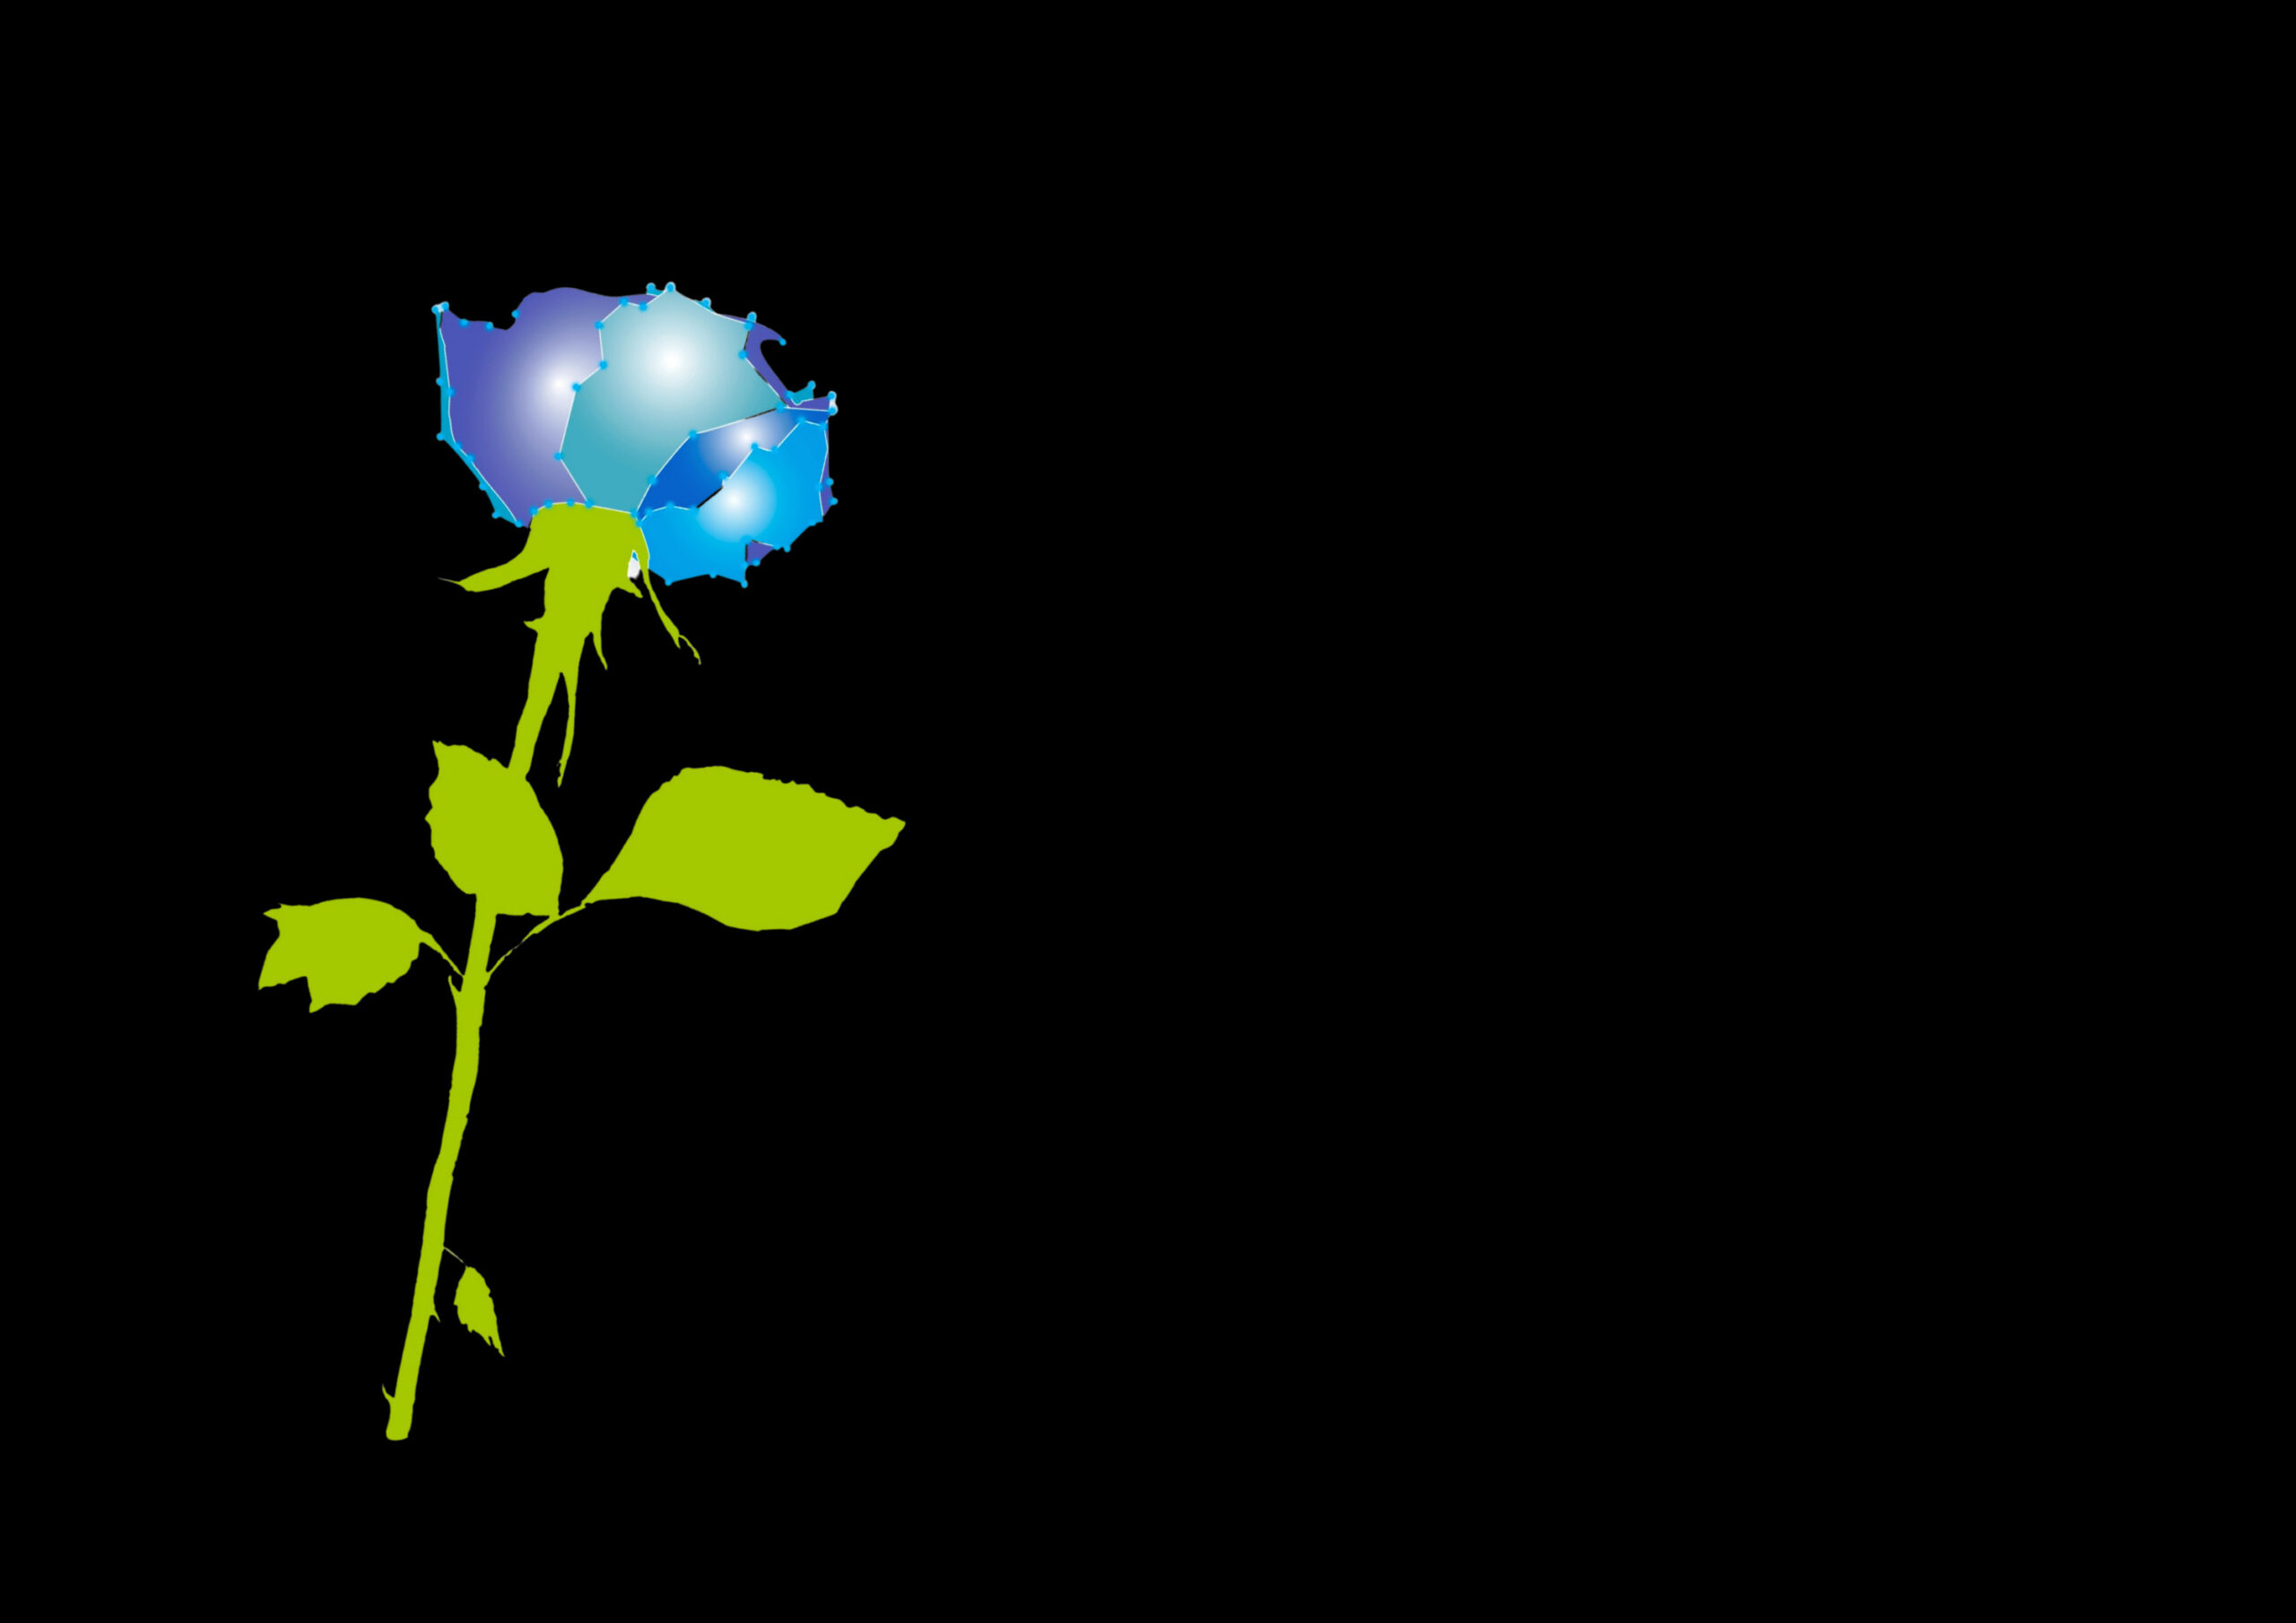 Rosa simbolo de La Milanesiana 2021